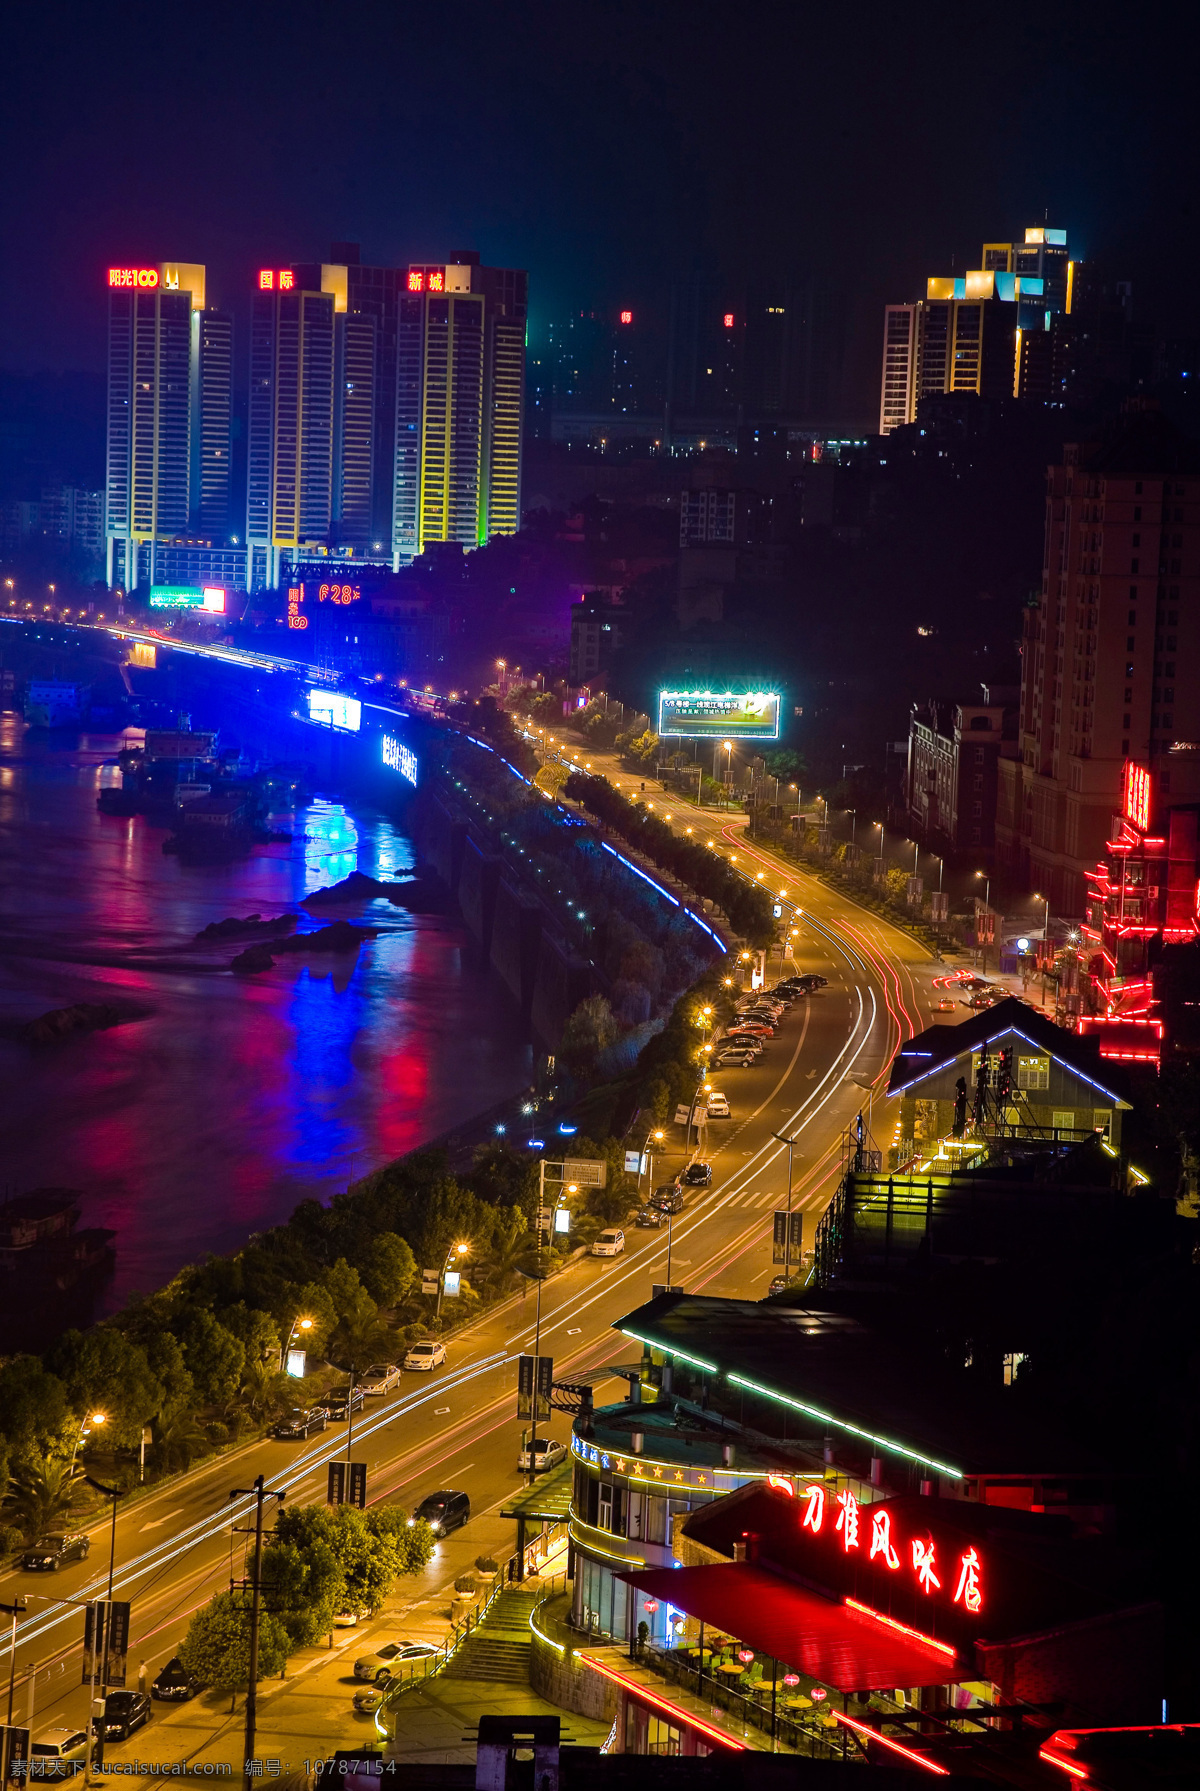 重庆 城市 夜景 鸟瞰图 psd源文件